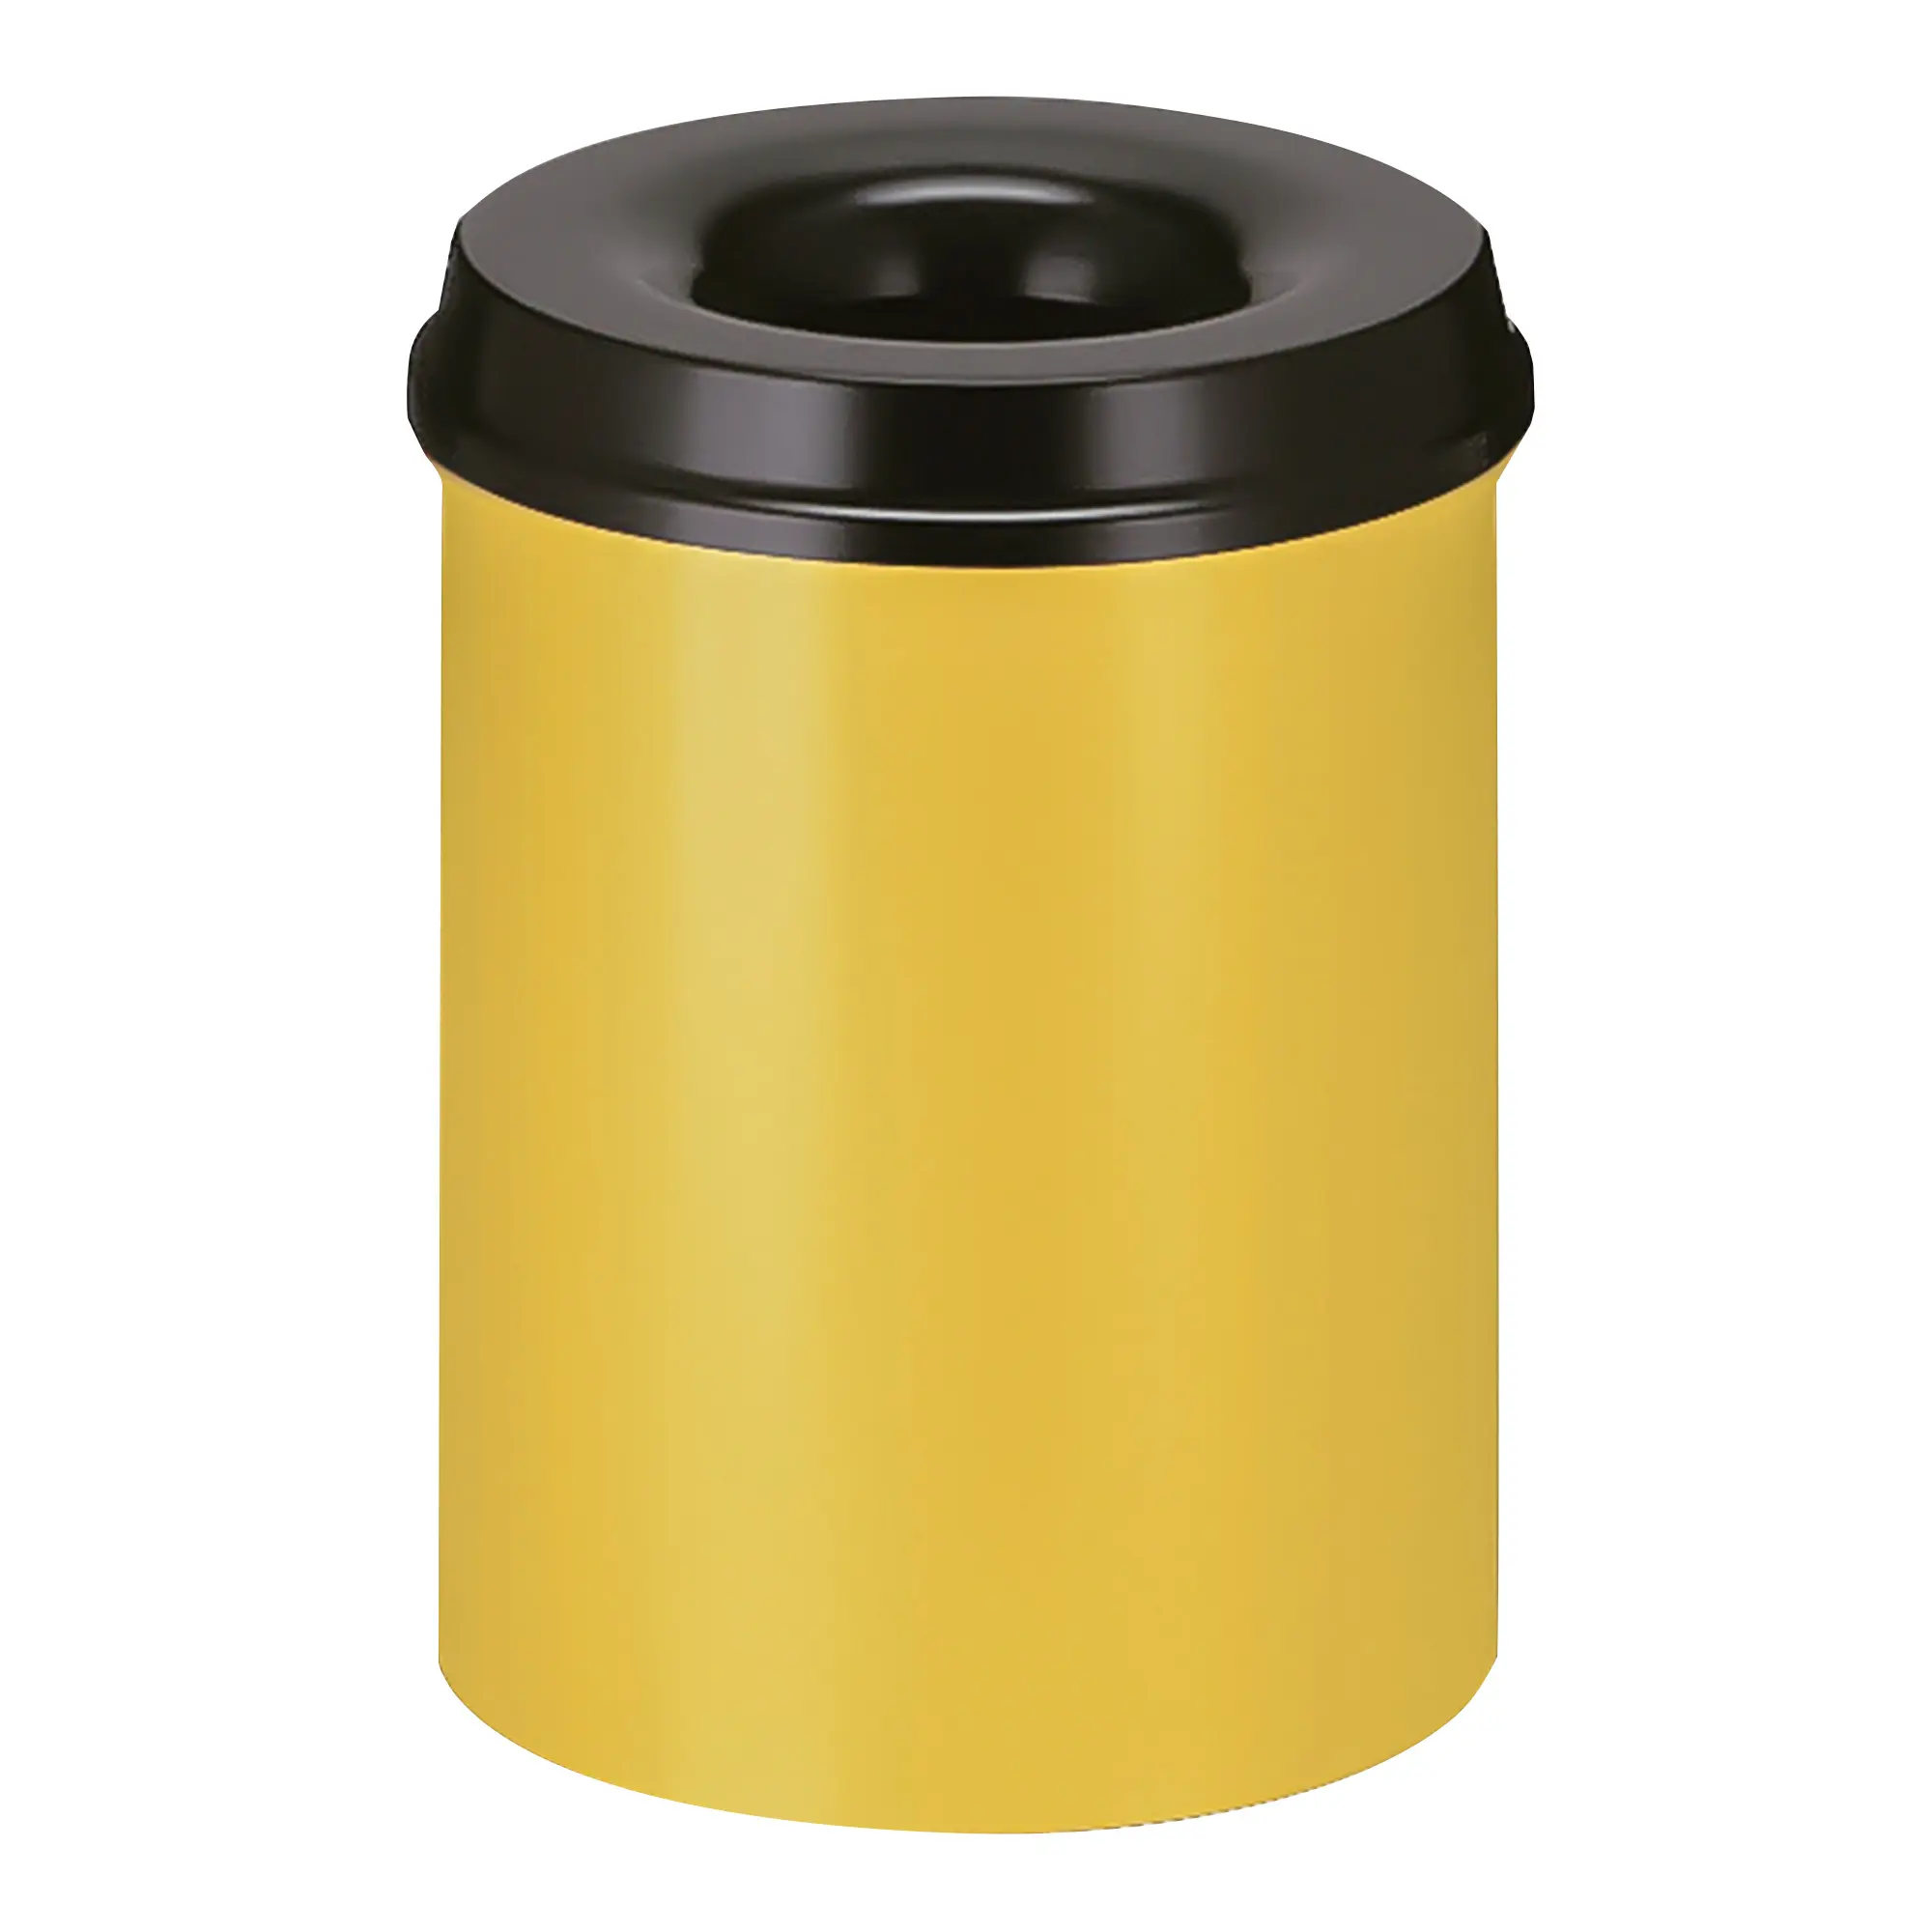 V-Part Feuerlöschender Papierkorb 15 Liter gelb/schwarz 31001262_1